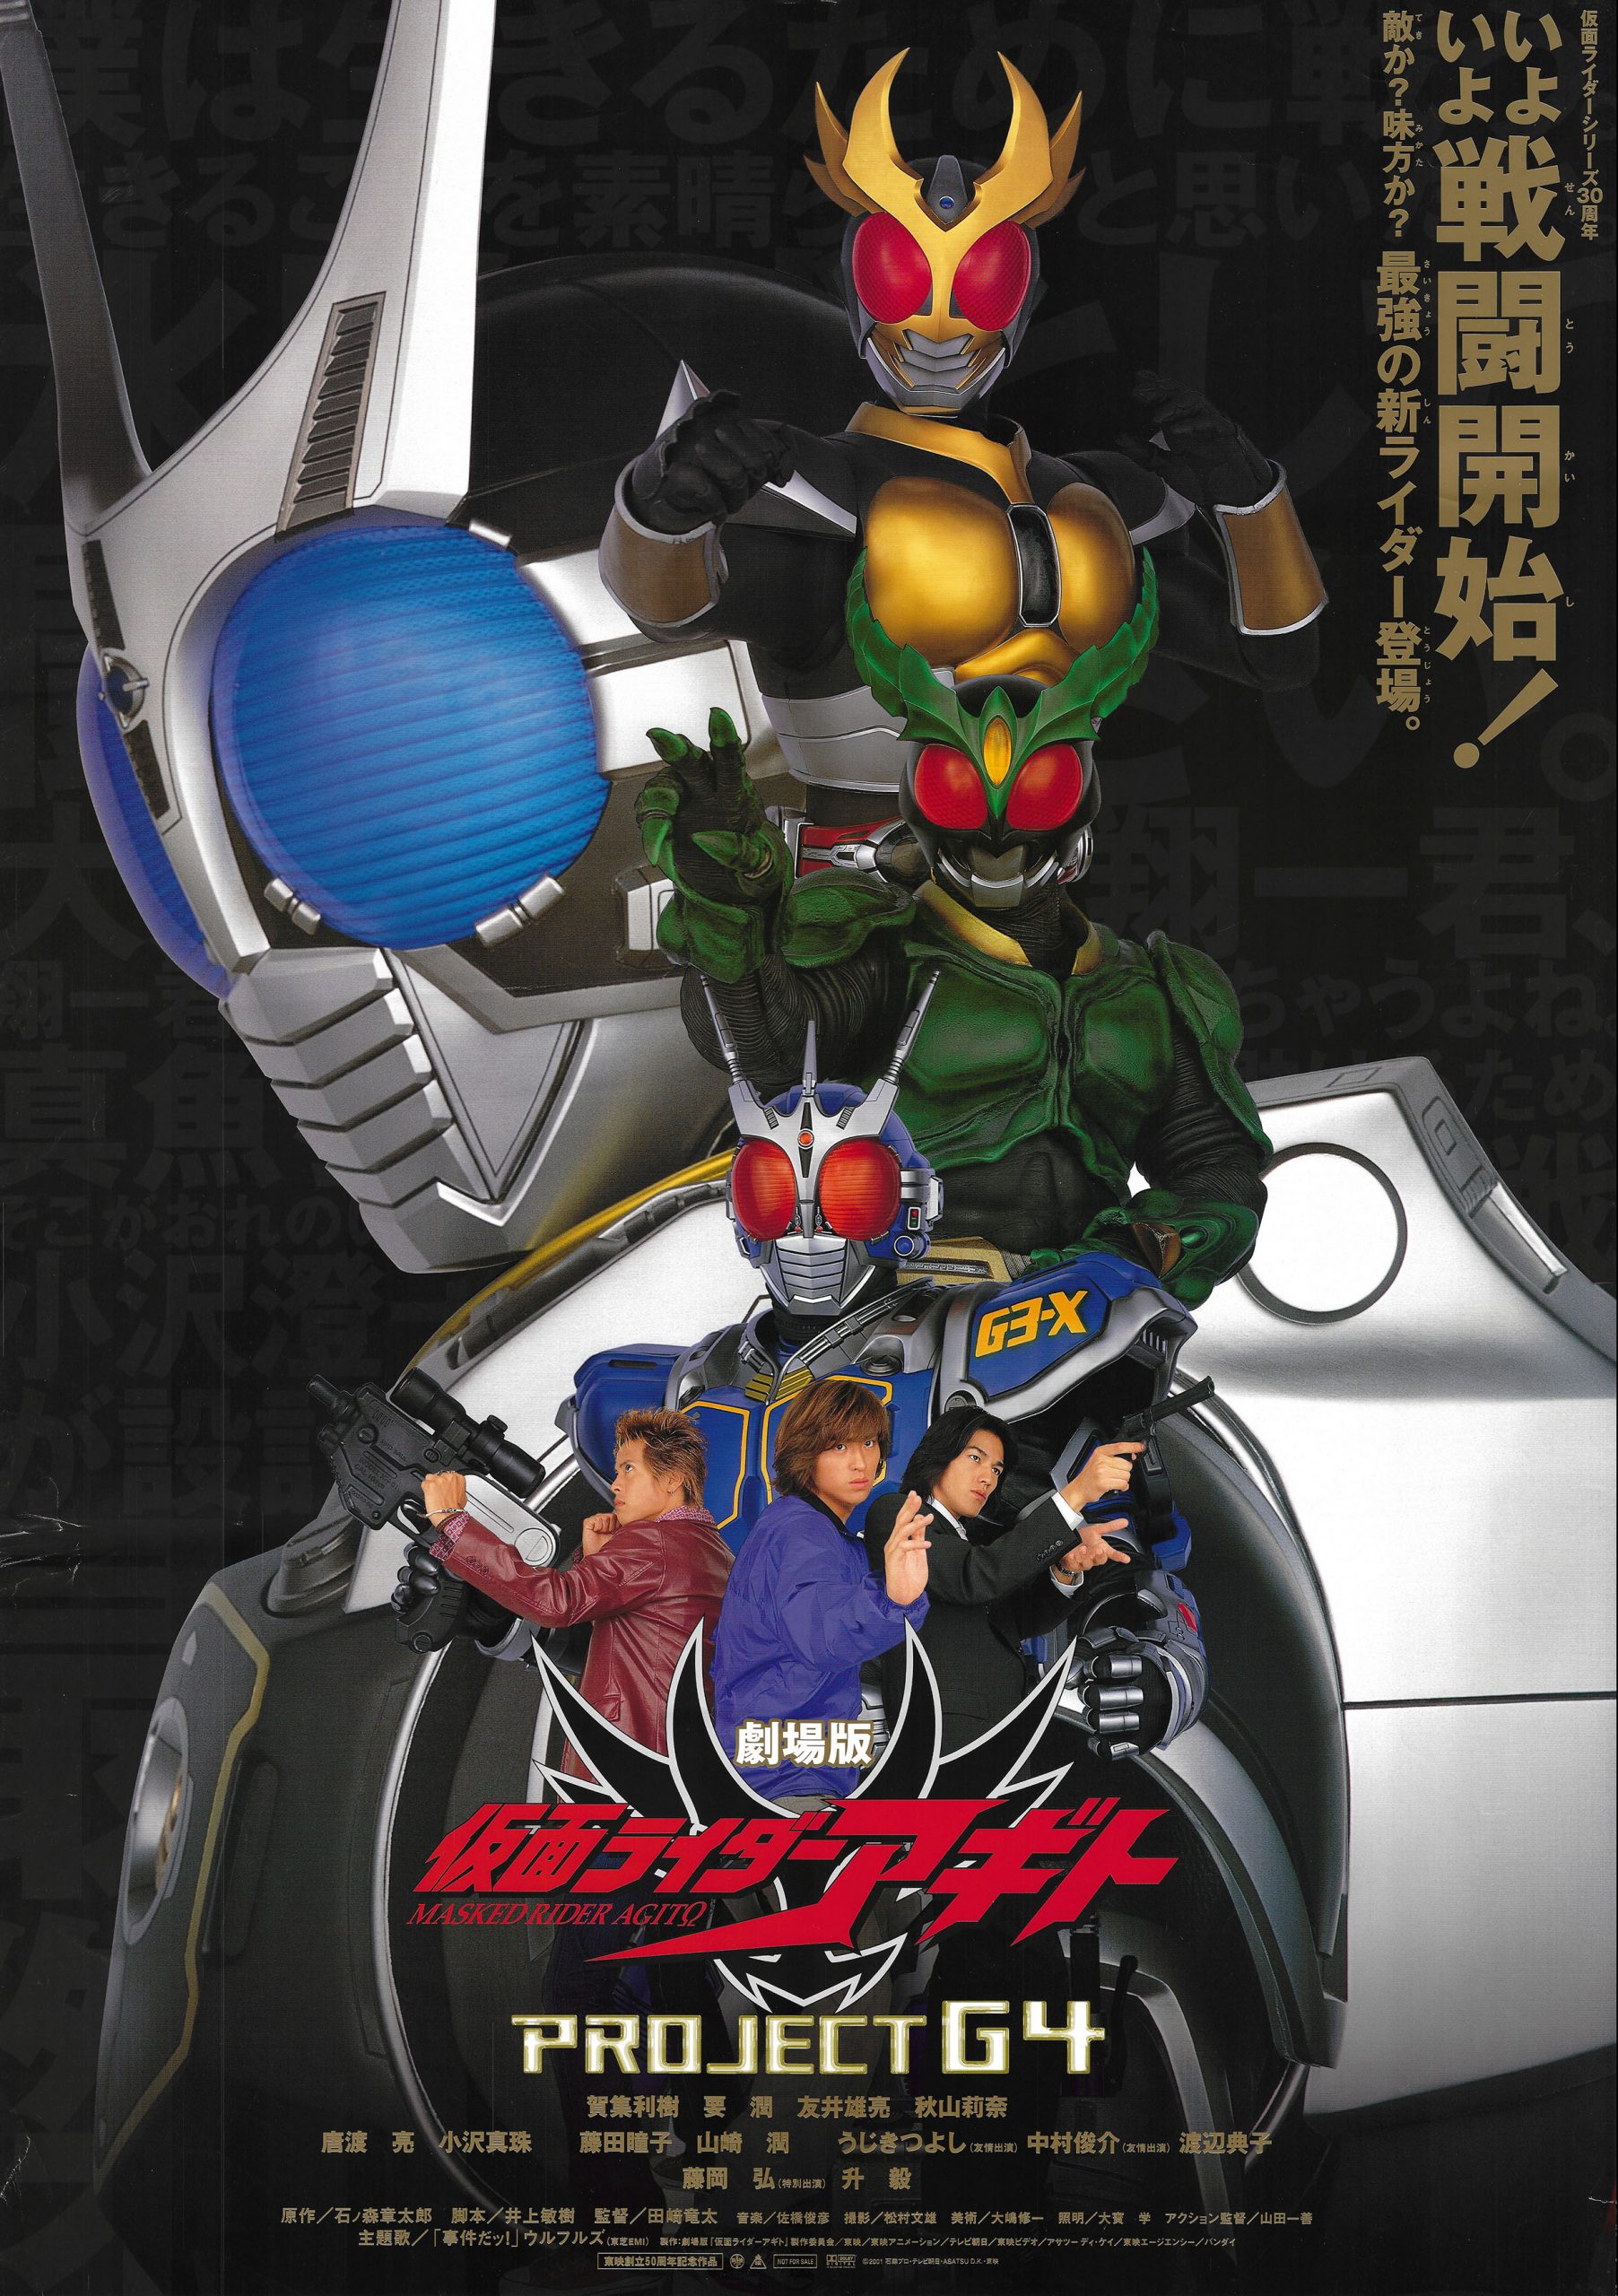 Kamen Rider Agito : Project G4 (2001)